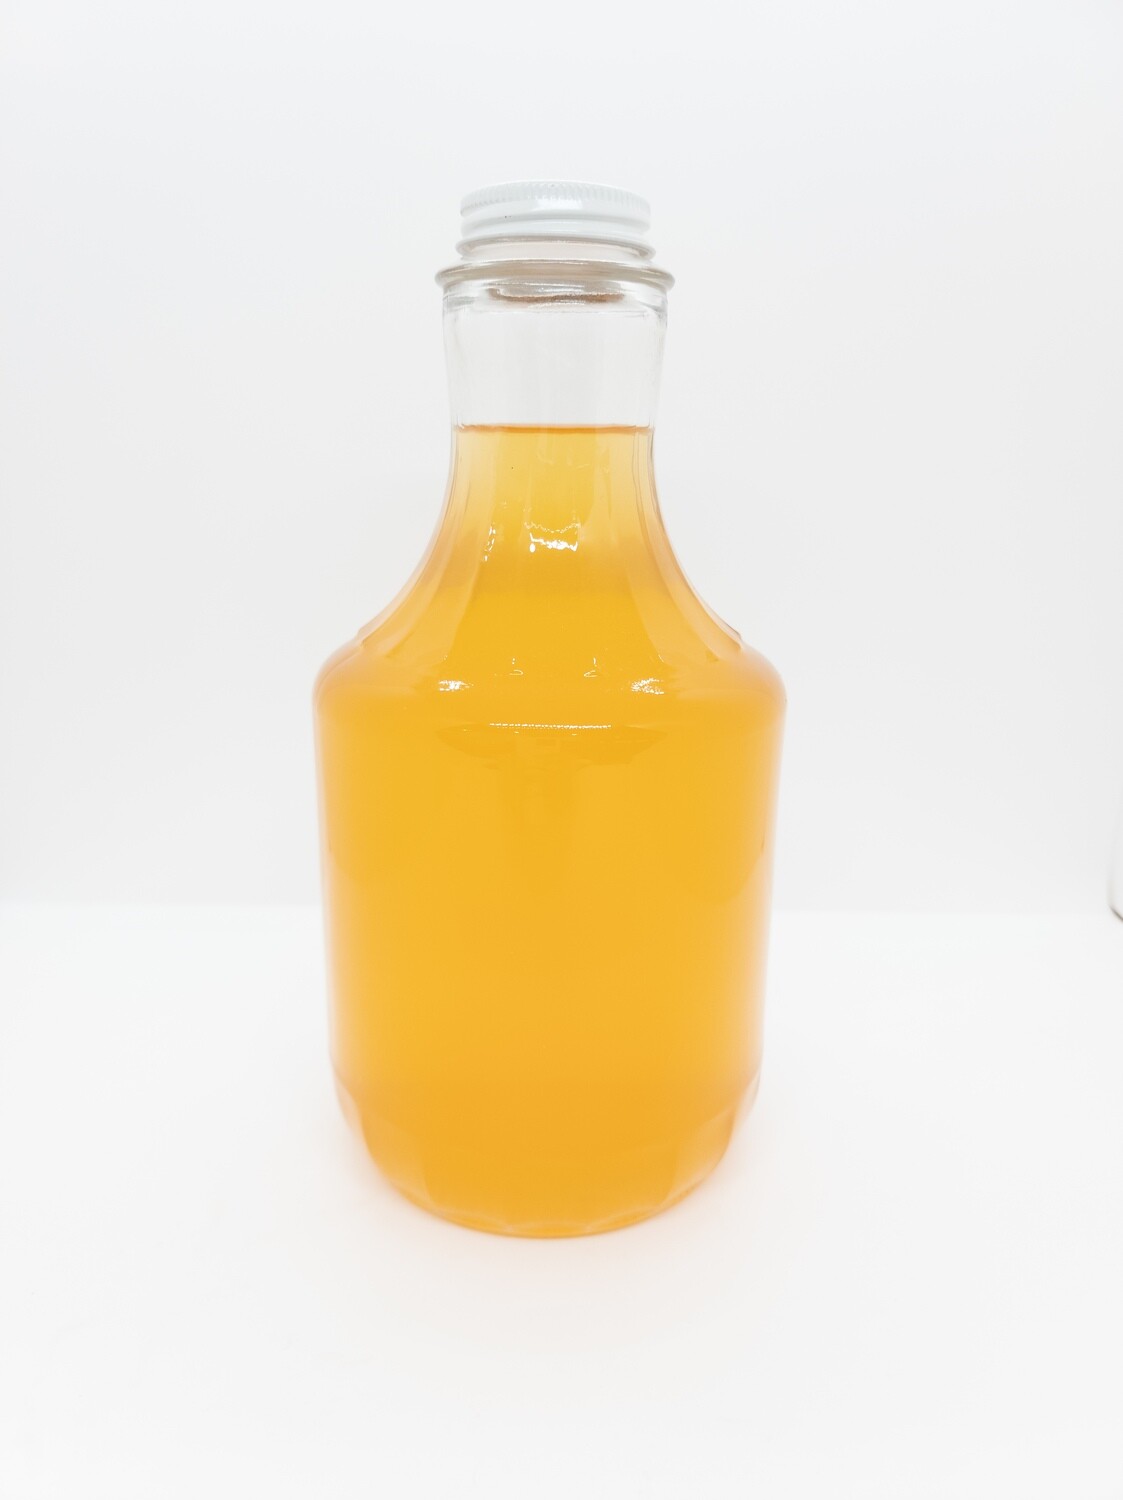 32 oz.  Freshly Pressed 100% Apple Cider with $2 empty bottle buy back.